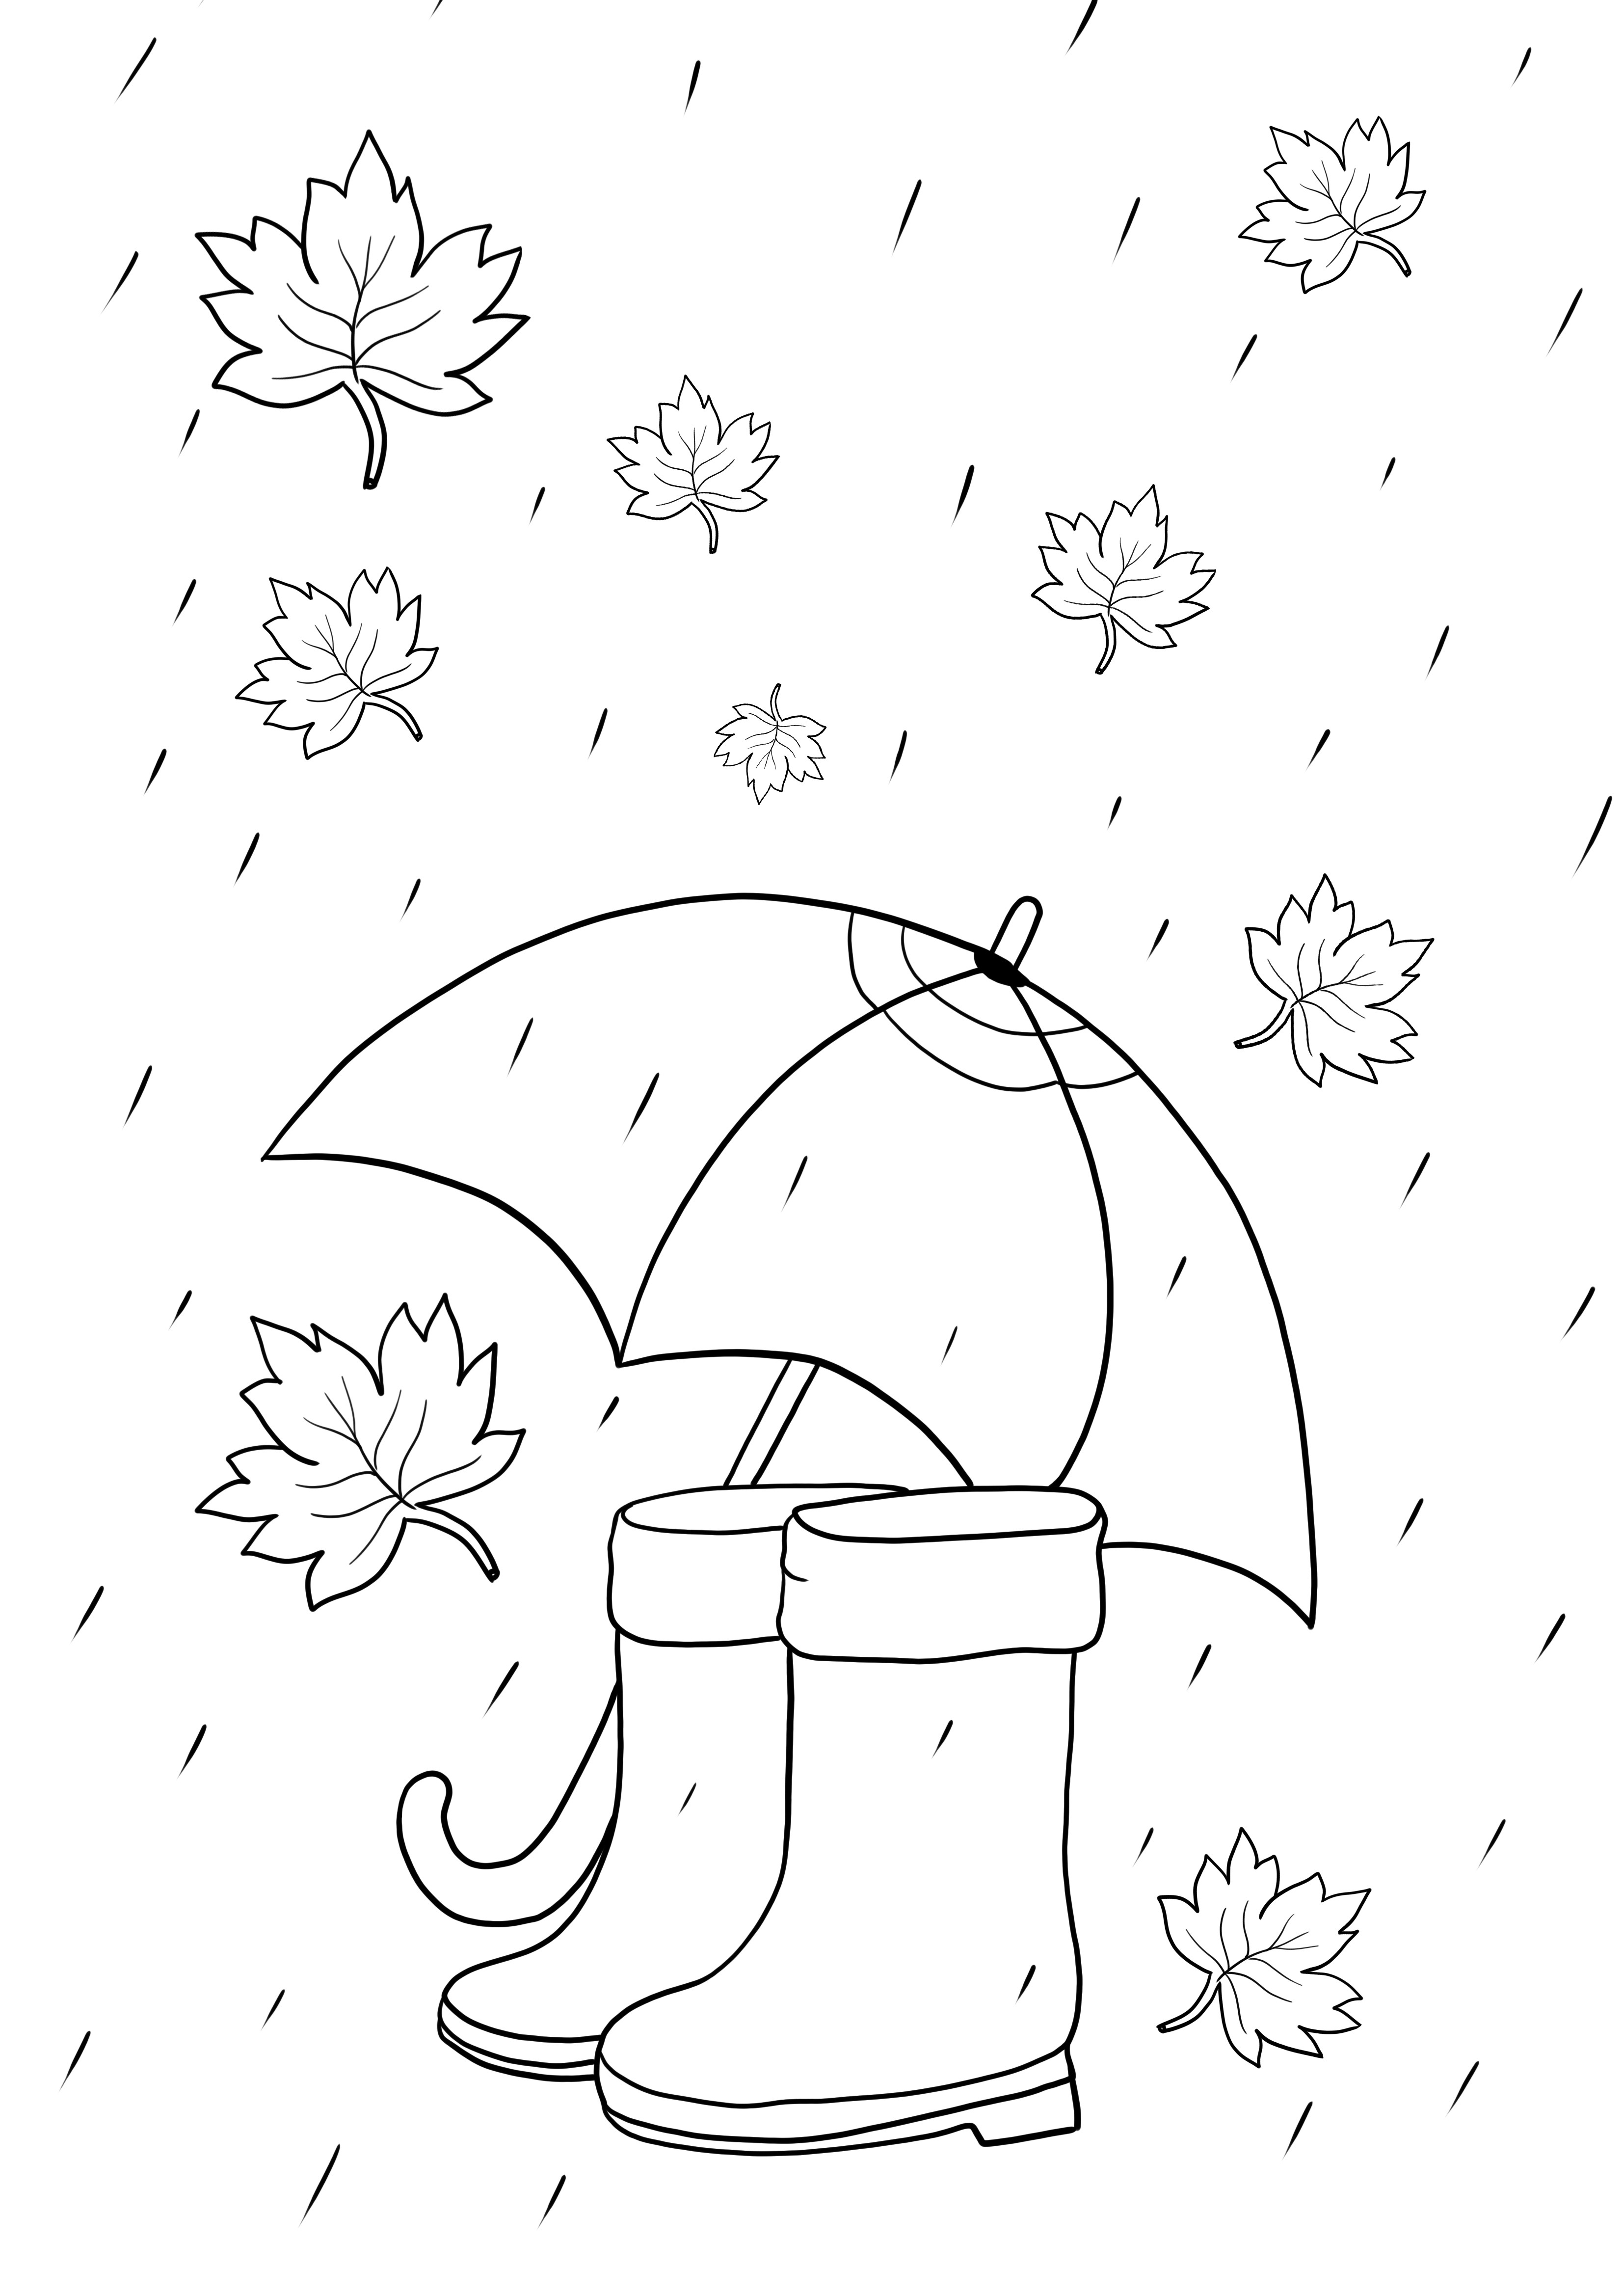 Articole de vreme ploioasă - umbrelă și cizme pentru a imprima sau descărca gratuit